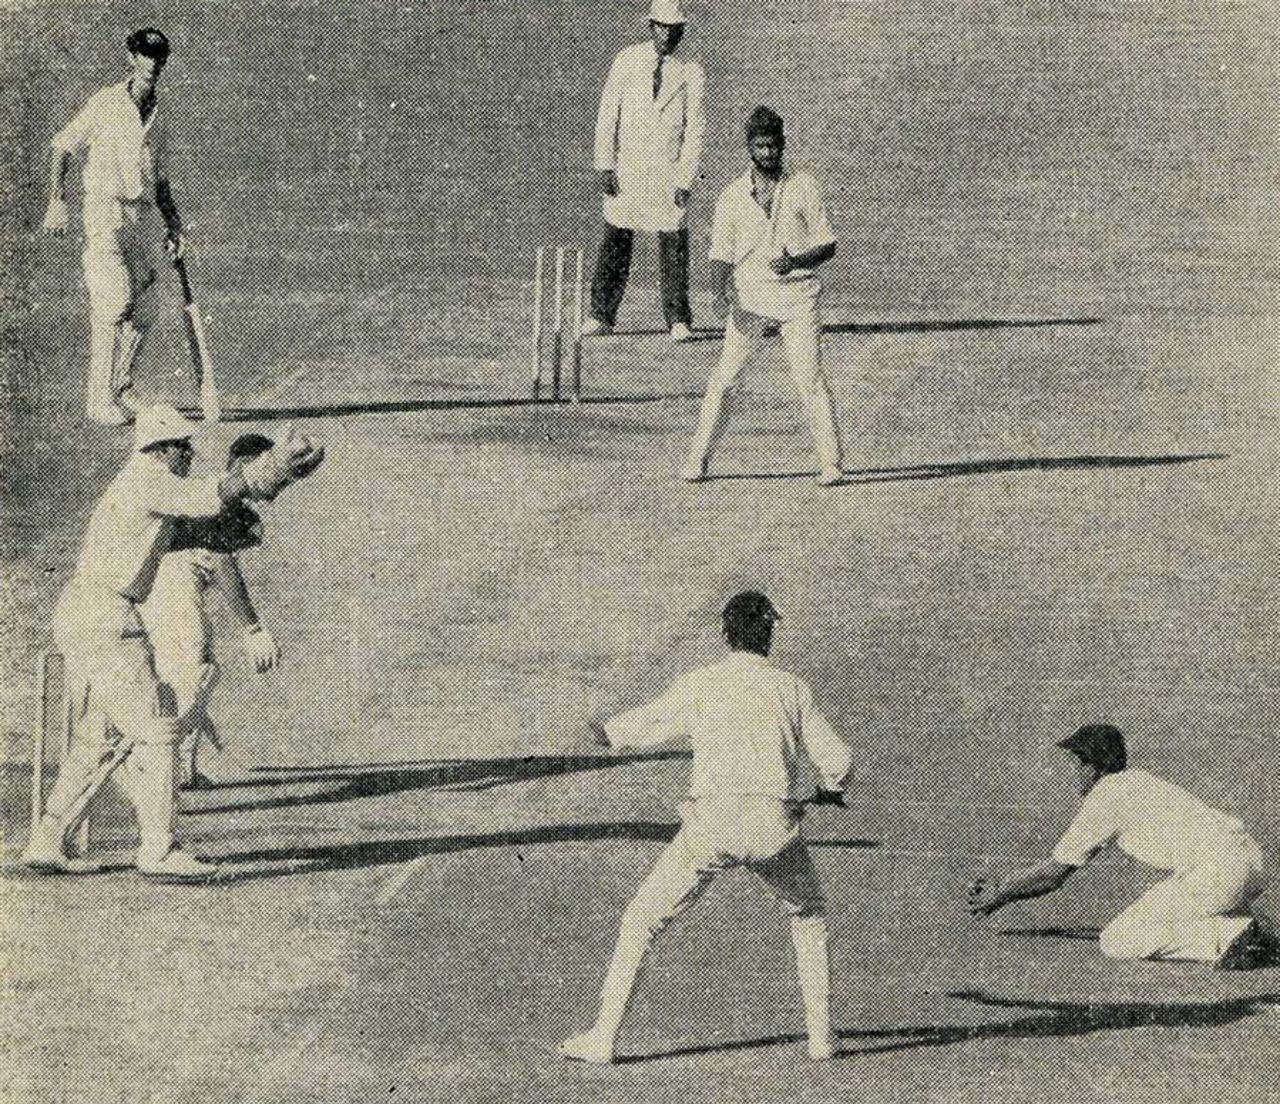 Eknath Solkar takes an excellent low catch to dismiss John Gleeson, India v Australia, 3rd Test, Delhi, November 29, 1969